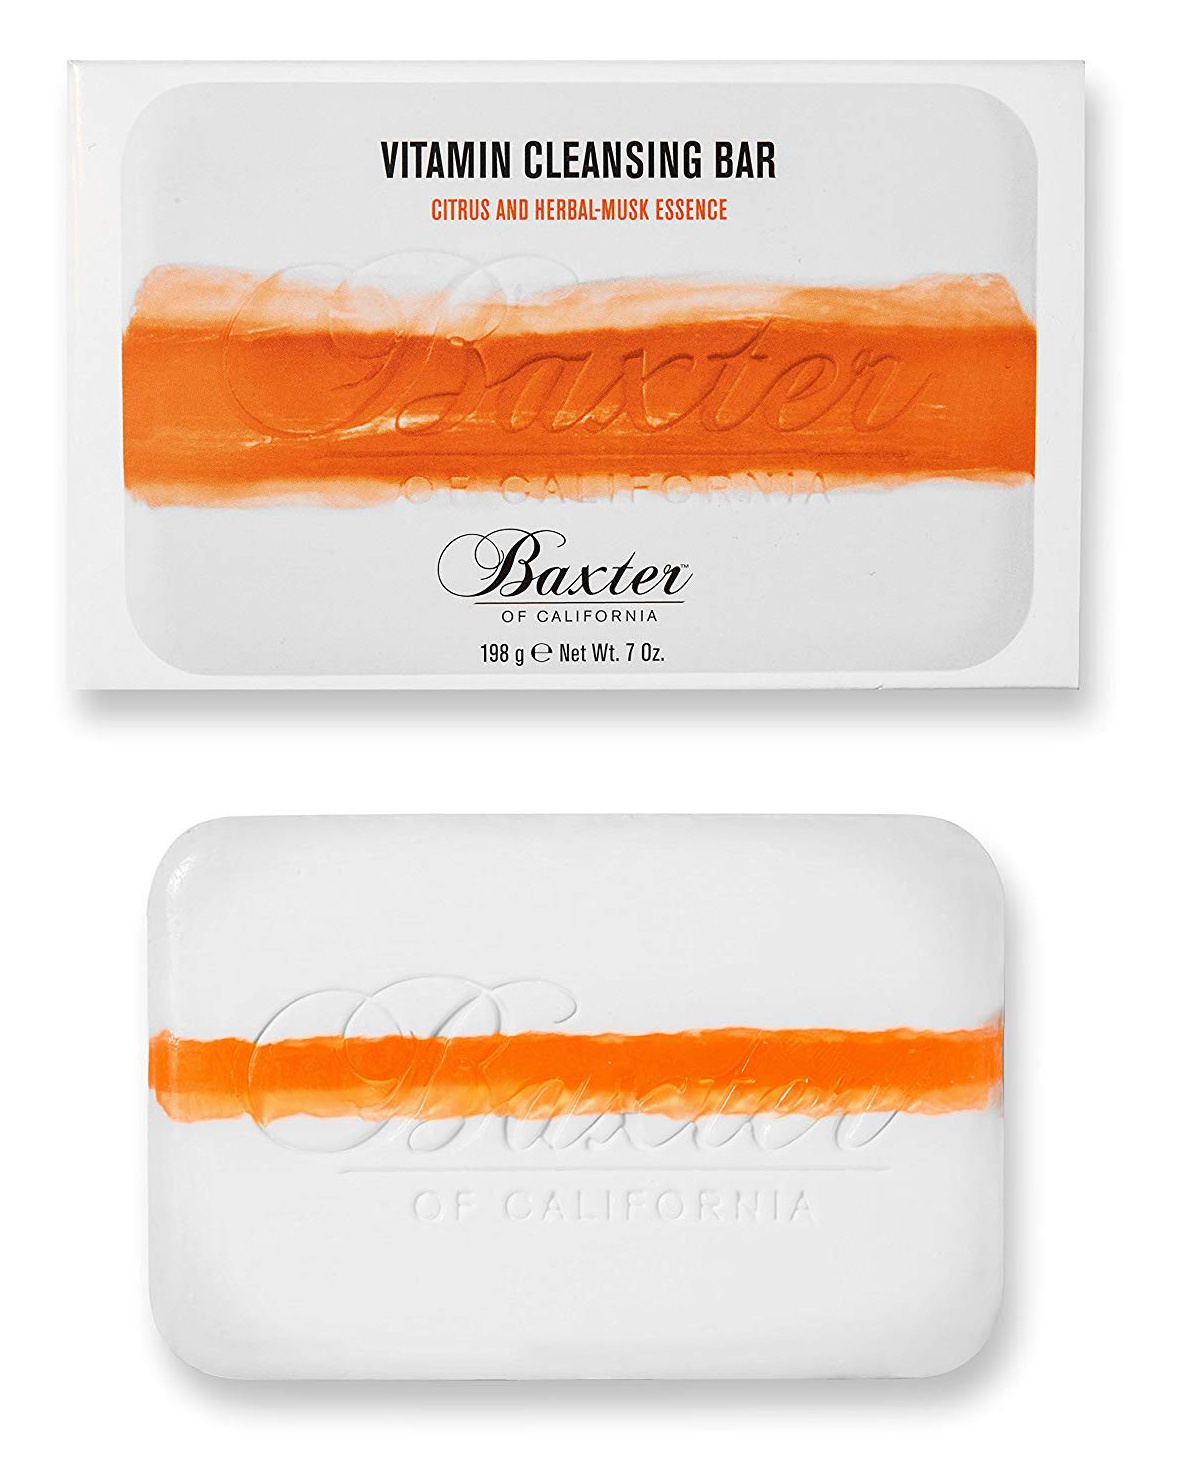 Baxter of California Vitamin Cleansing Bar - Citrus / Herbal Musk